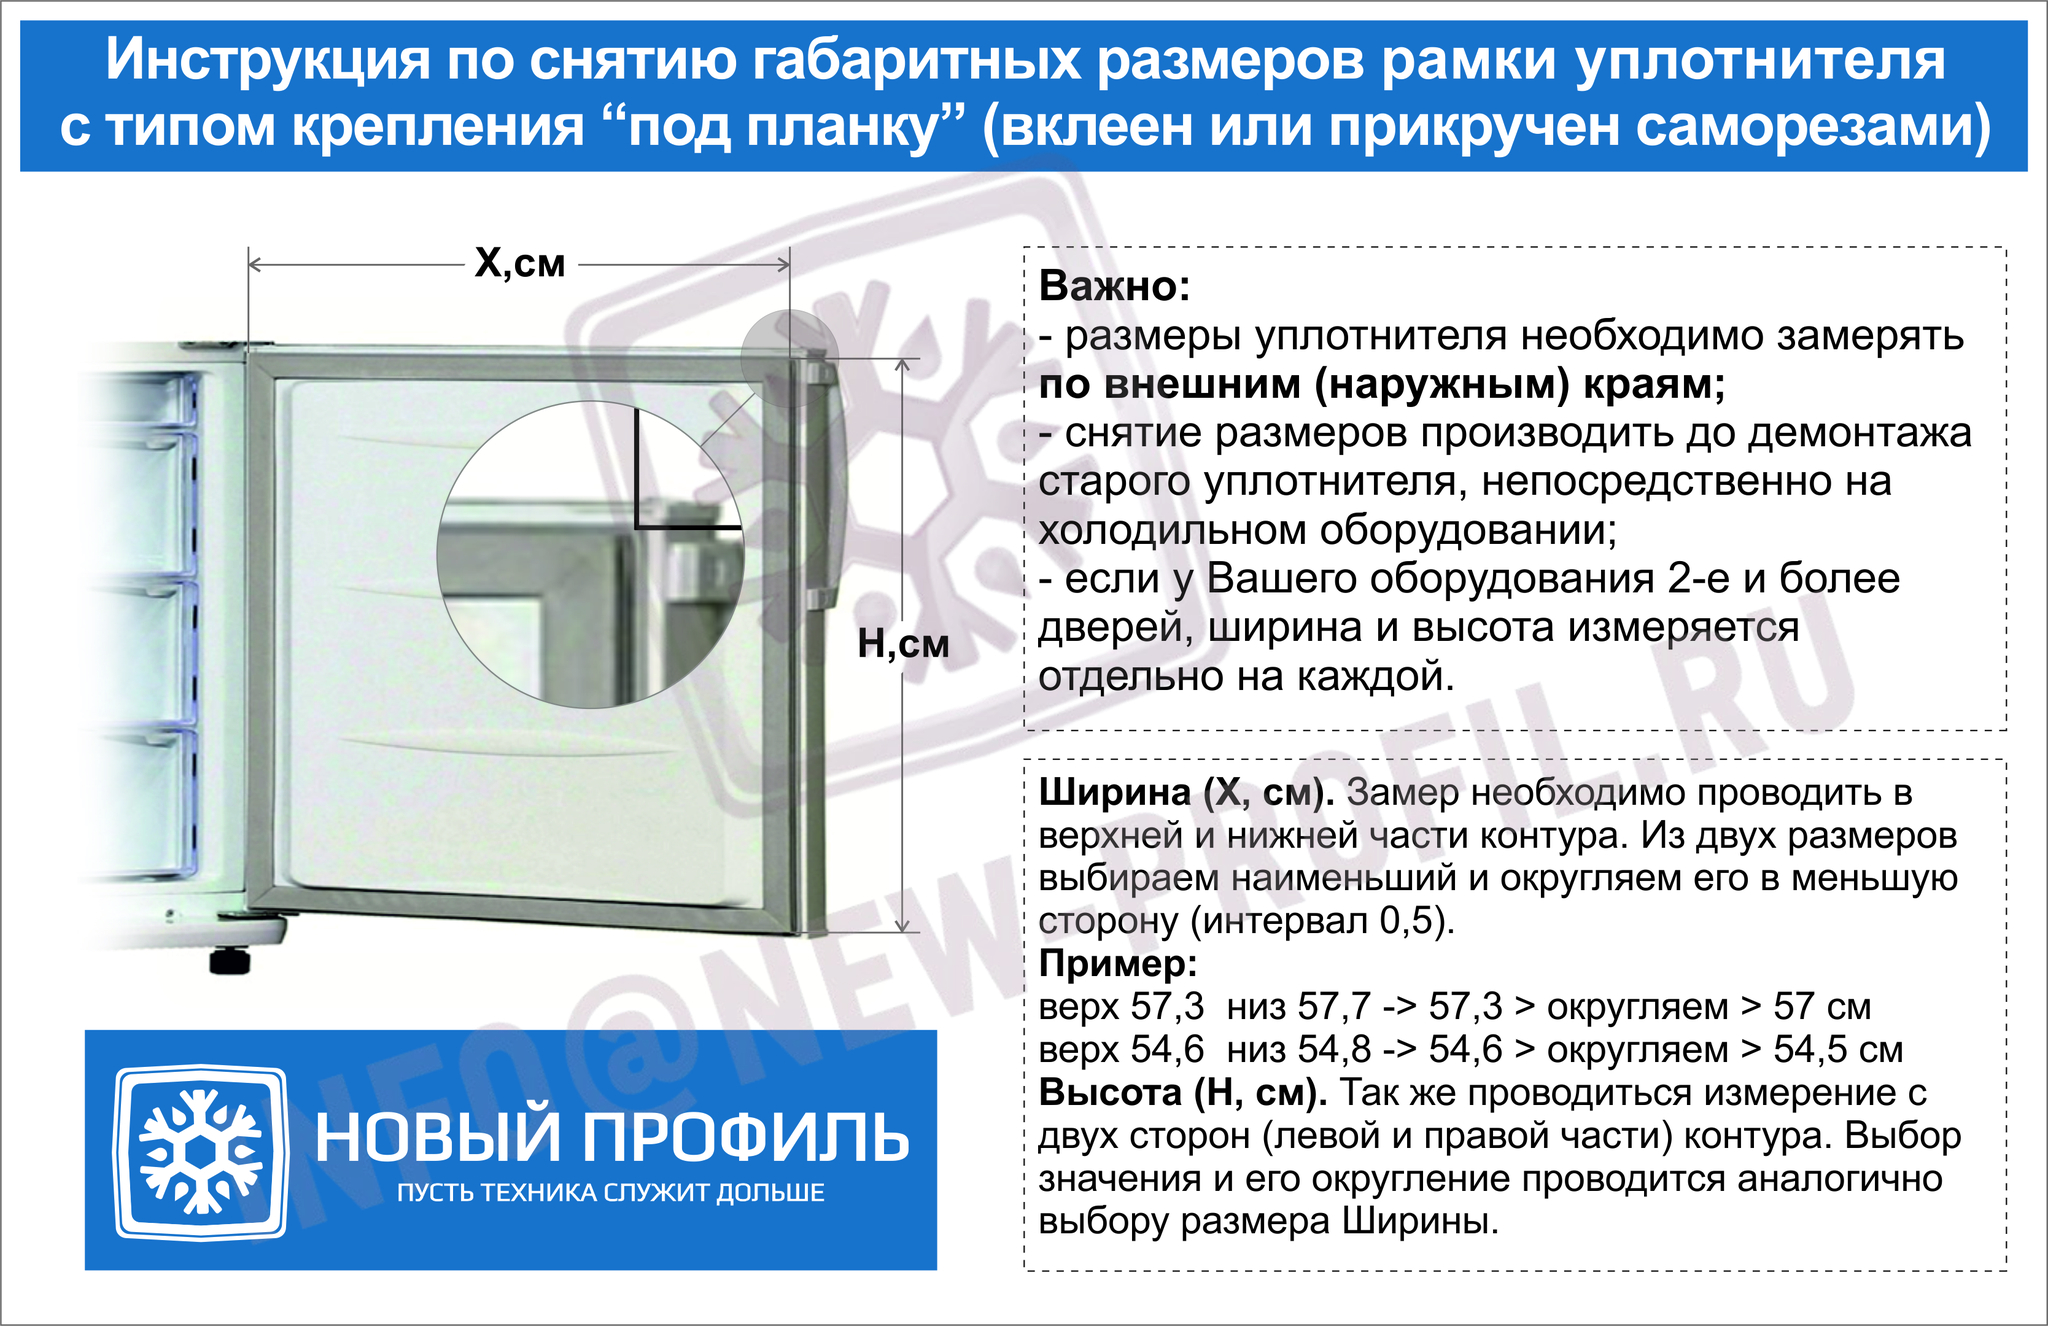 Холодильник ока 6м инструкция по эксплуатации